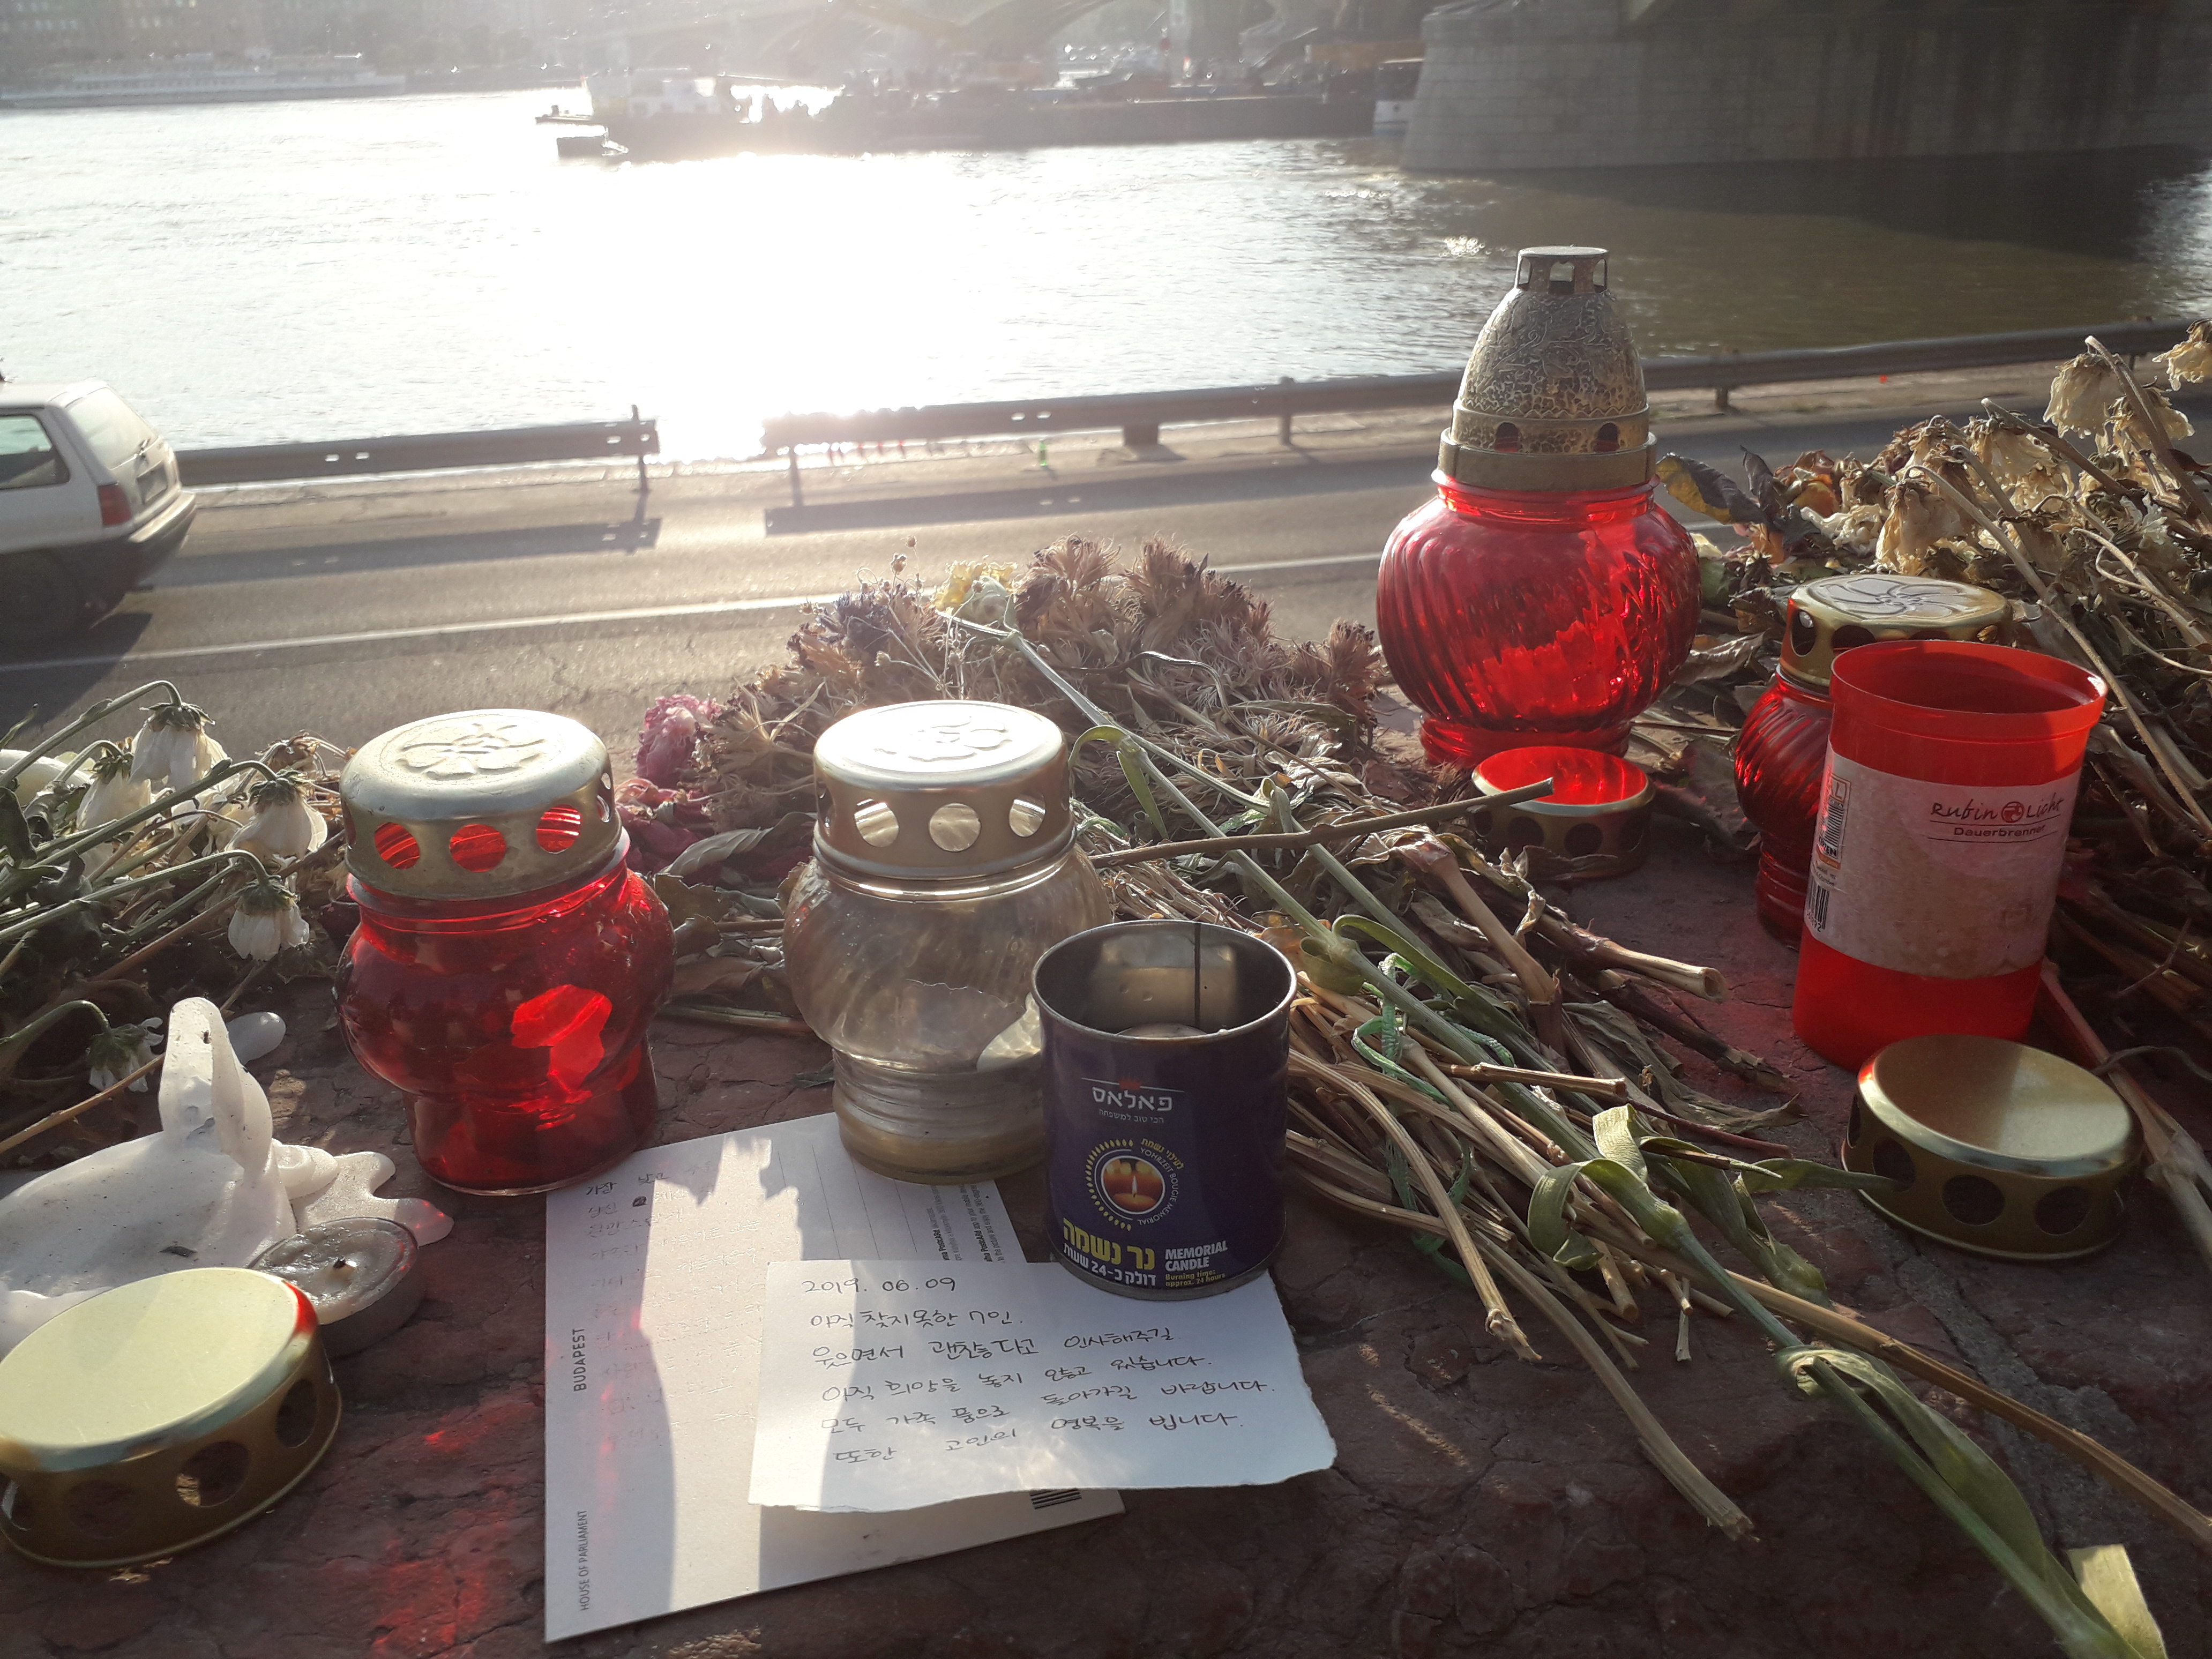 [와이파일] 헝가리 유람선 참사 "꽃은 시들고 촛불은 꺼지지만 기억하겠다."